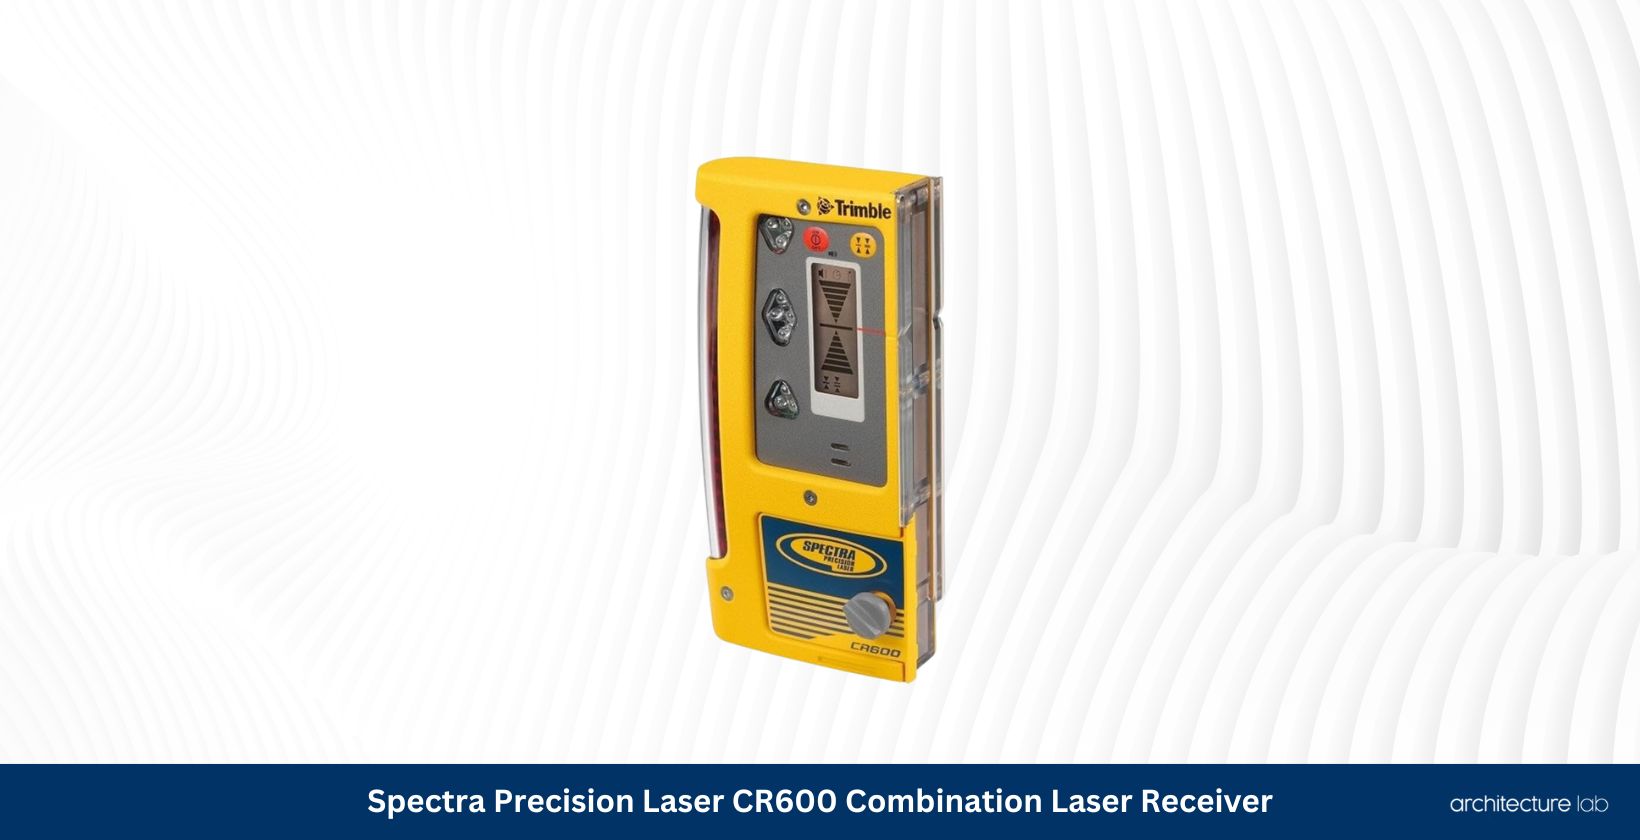 Spectra precision laser cr600